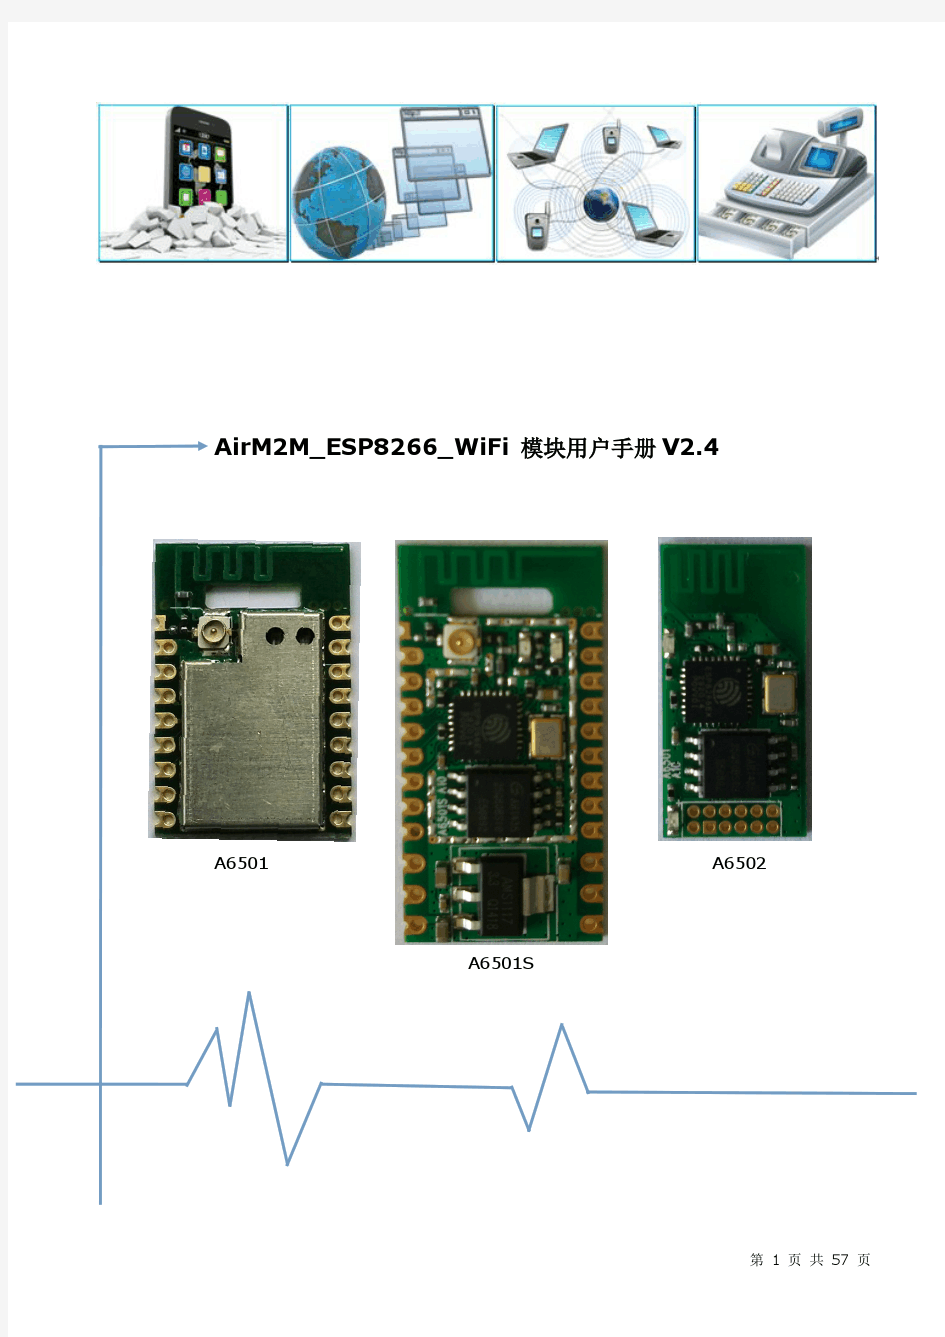 AirM2M_ESP8266_WiFi模块用户手册V2.4